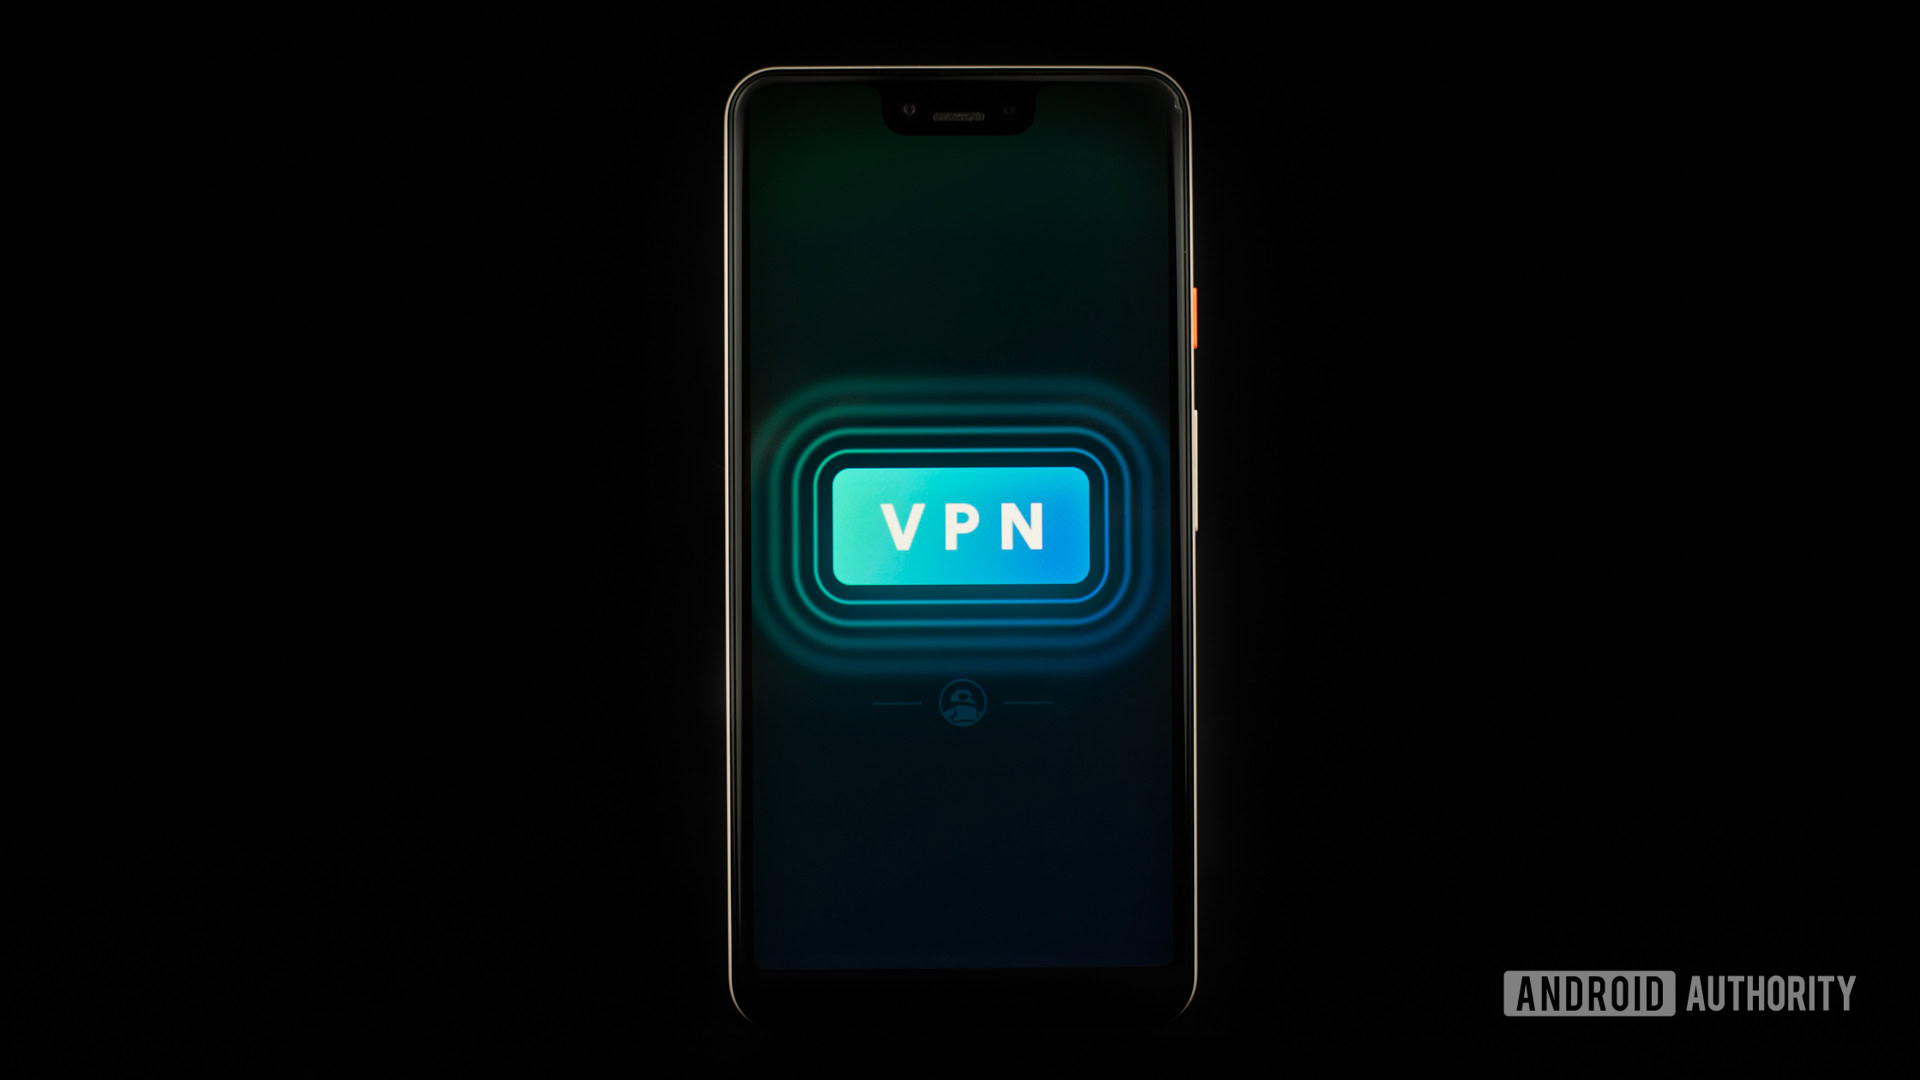 VPN stock photo 4